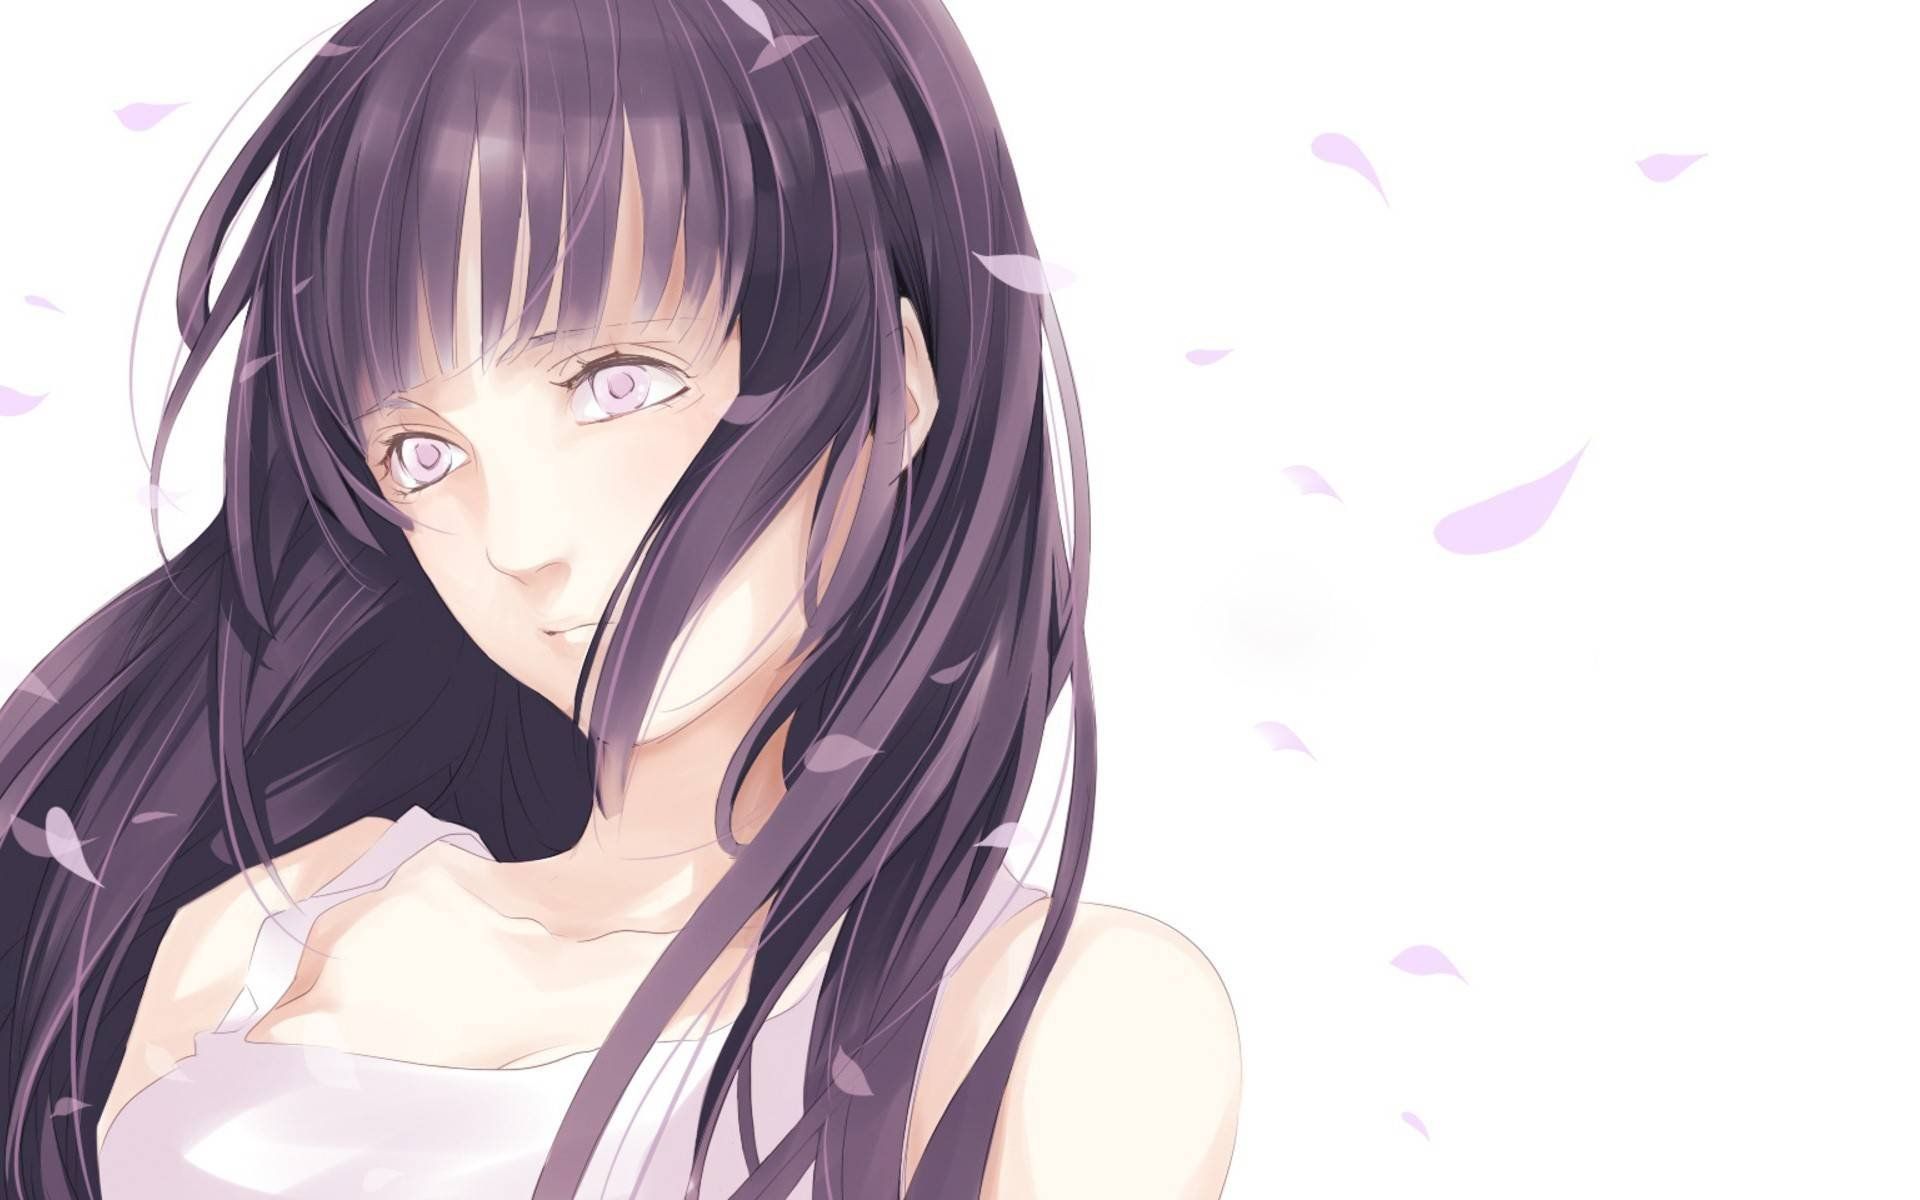 Anime Girl Black Hair White Eyes - HD Wallpaper 